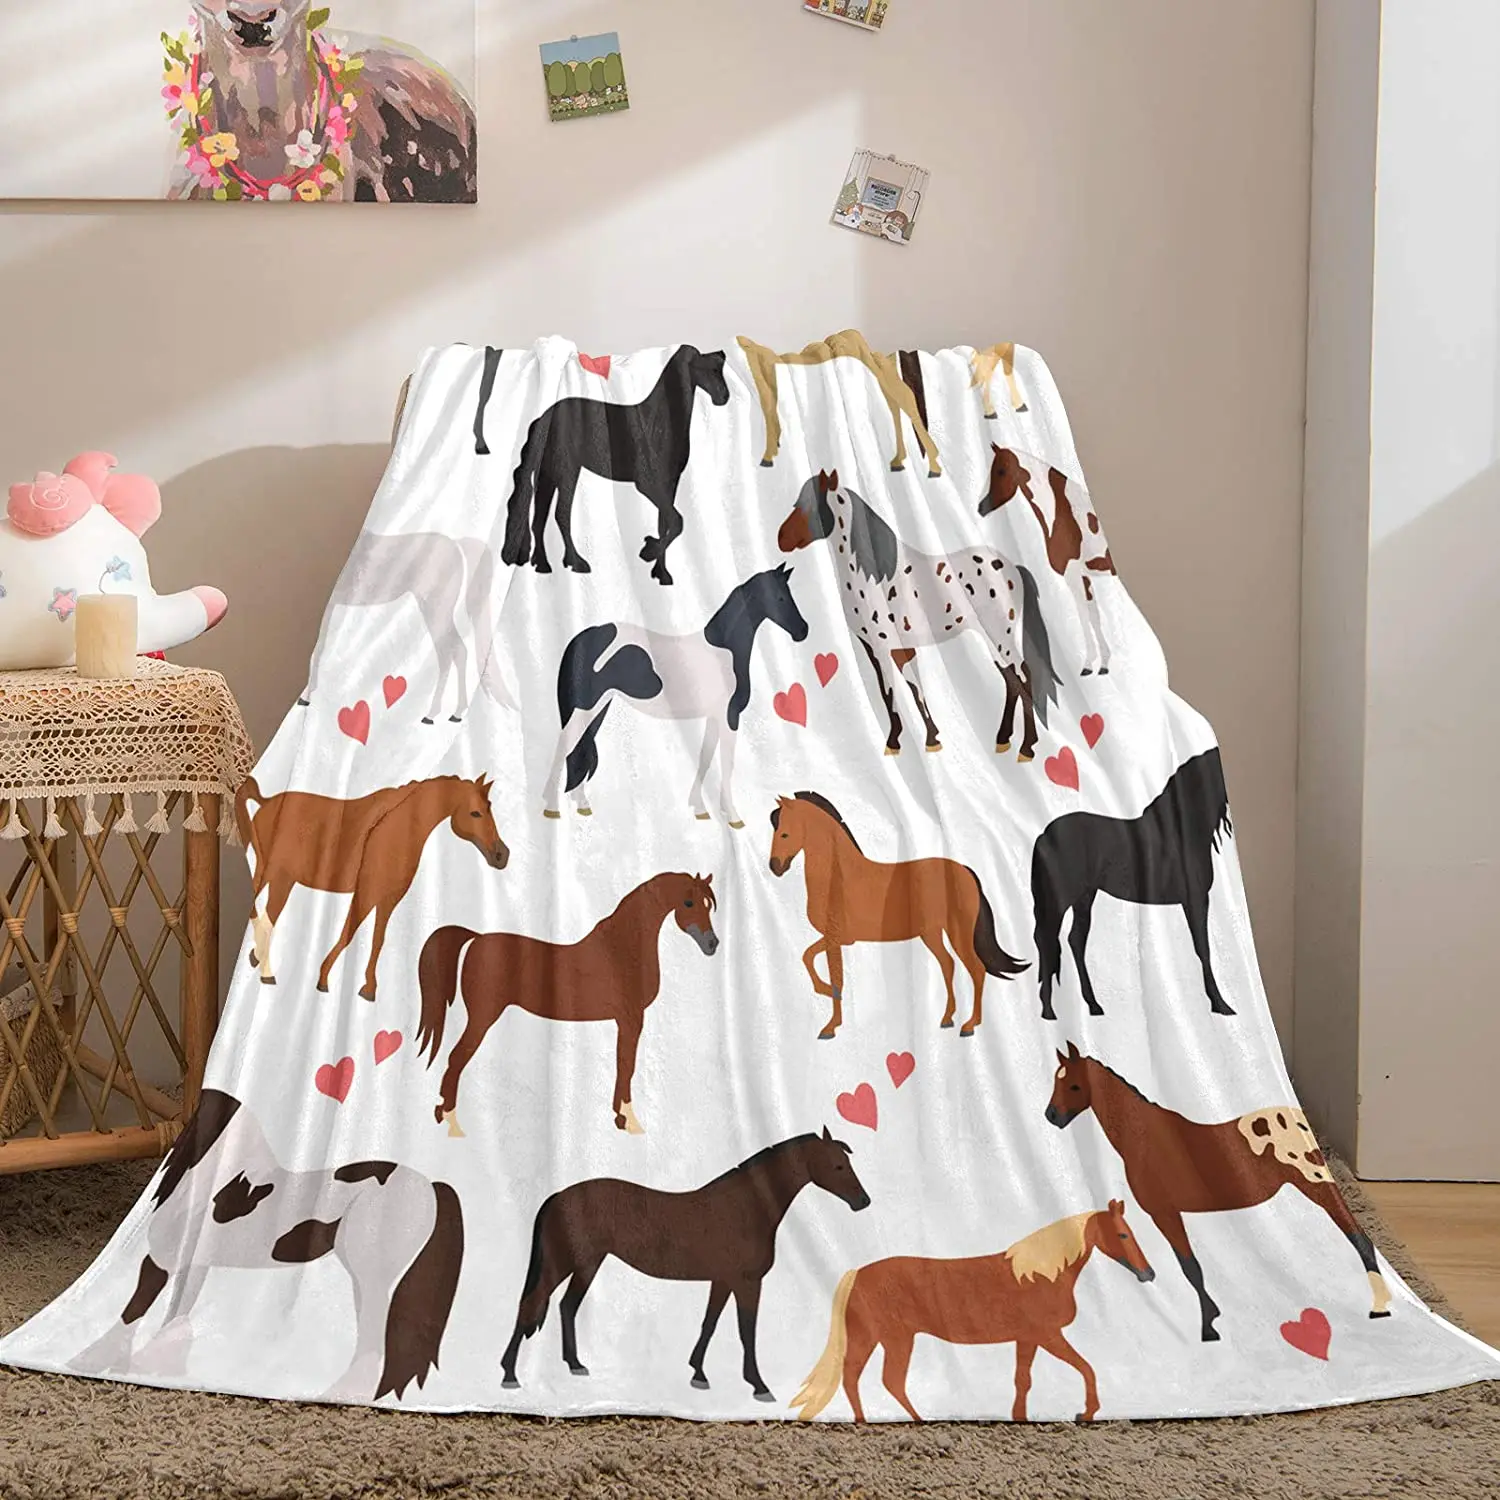 

Одеяло для лошадей Bedbay, красивое животное, одеяло, красочные лошади и розовое фланелевое одеяло для мальчиков и девочек, мягкое легкое плюше...